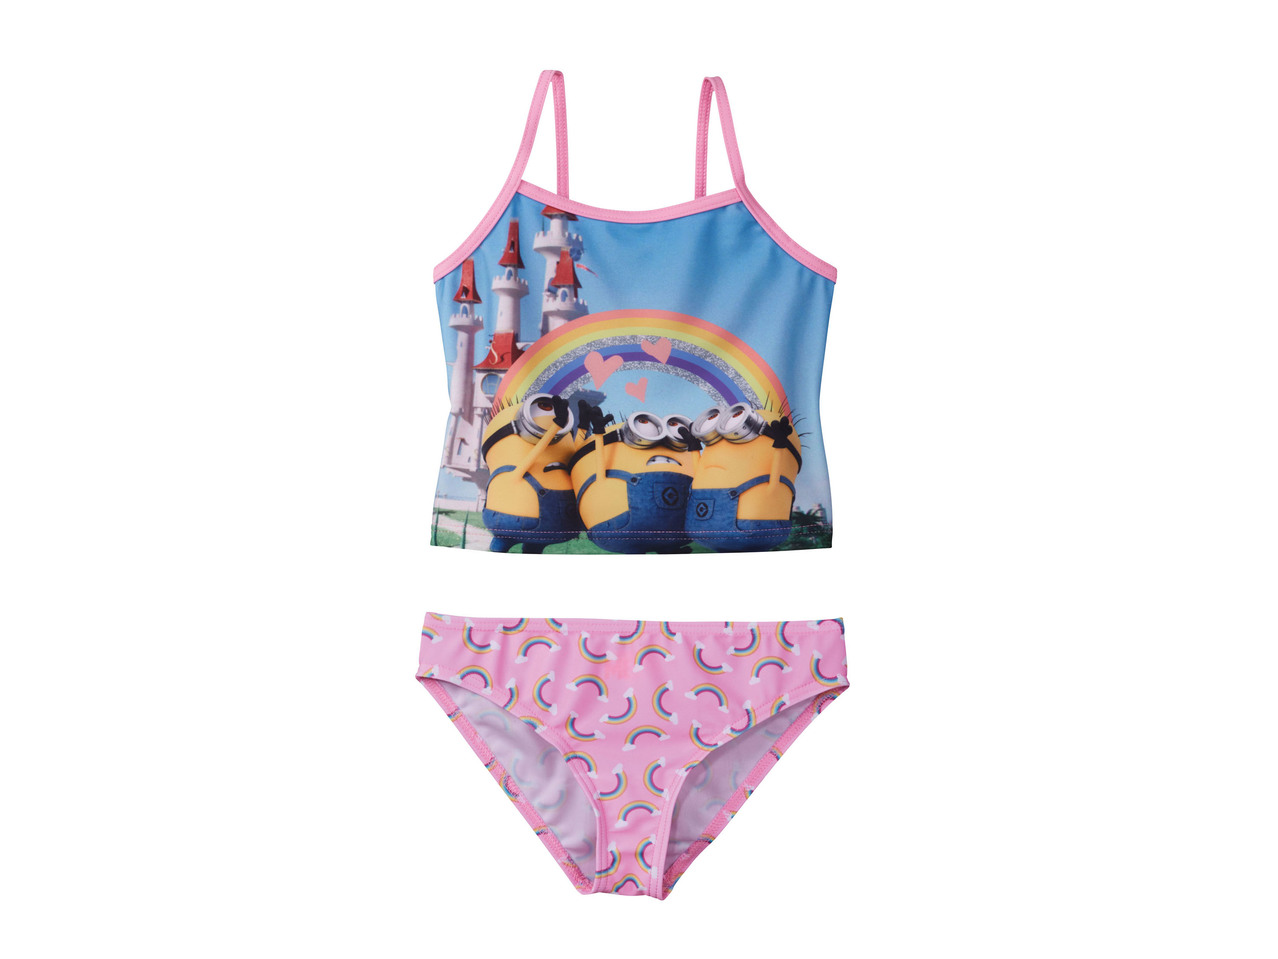 Girls' Swimsuit "Minnie, Minions, Mickey Mouse, Sirenetta, Frozen"